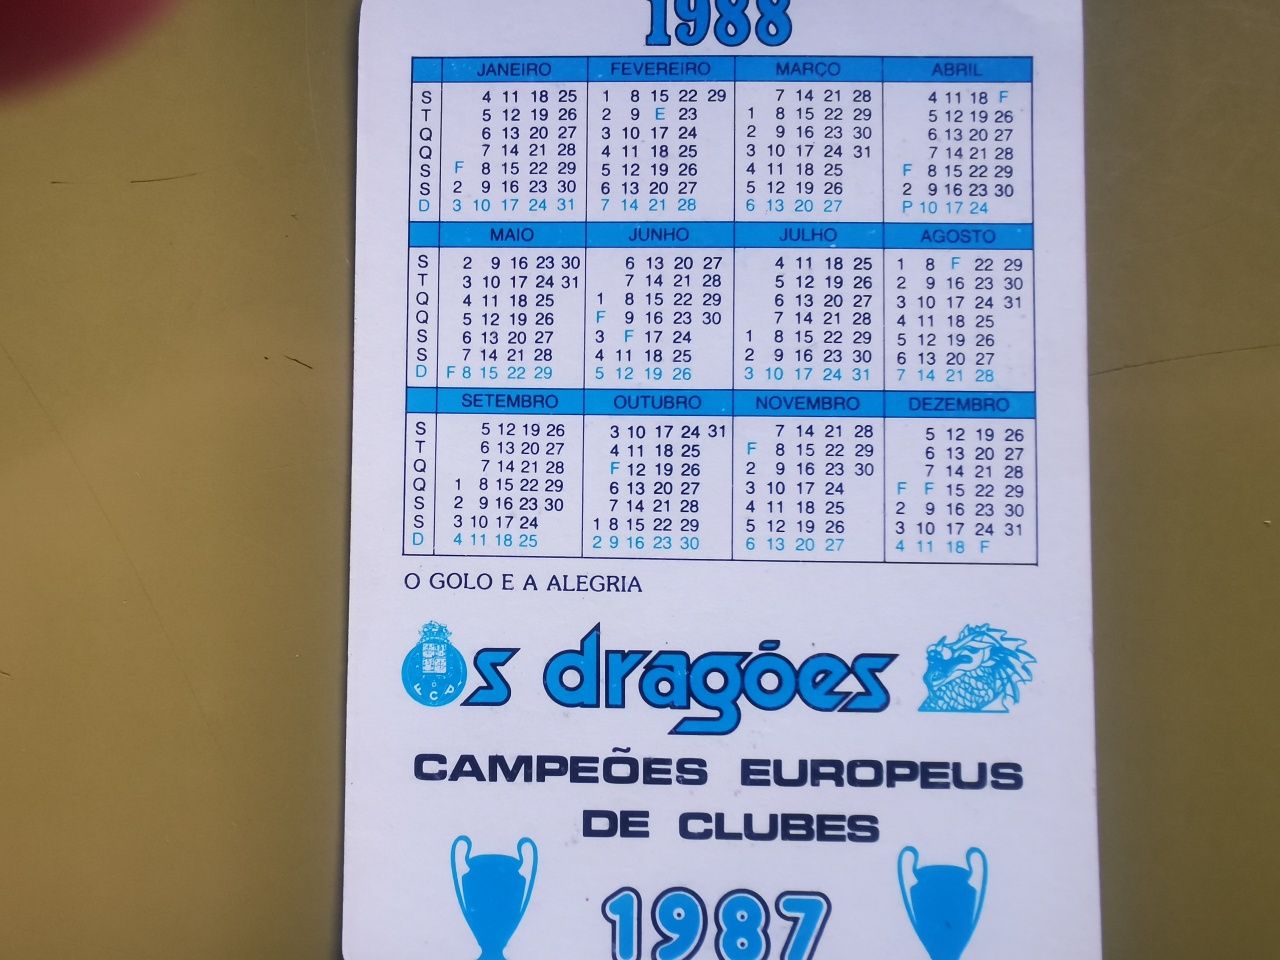 Calendário antigo "Os Dragões" campeão europeu de clubes